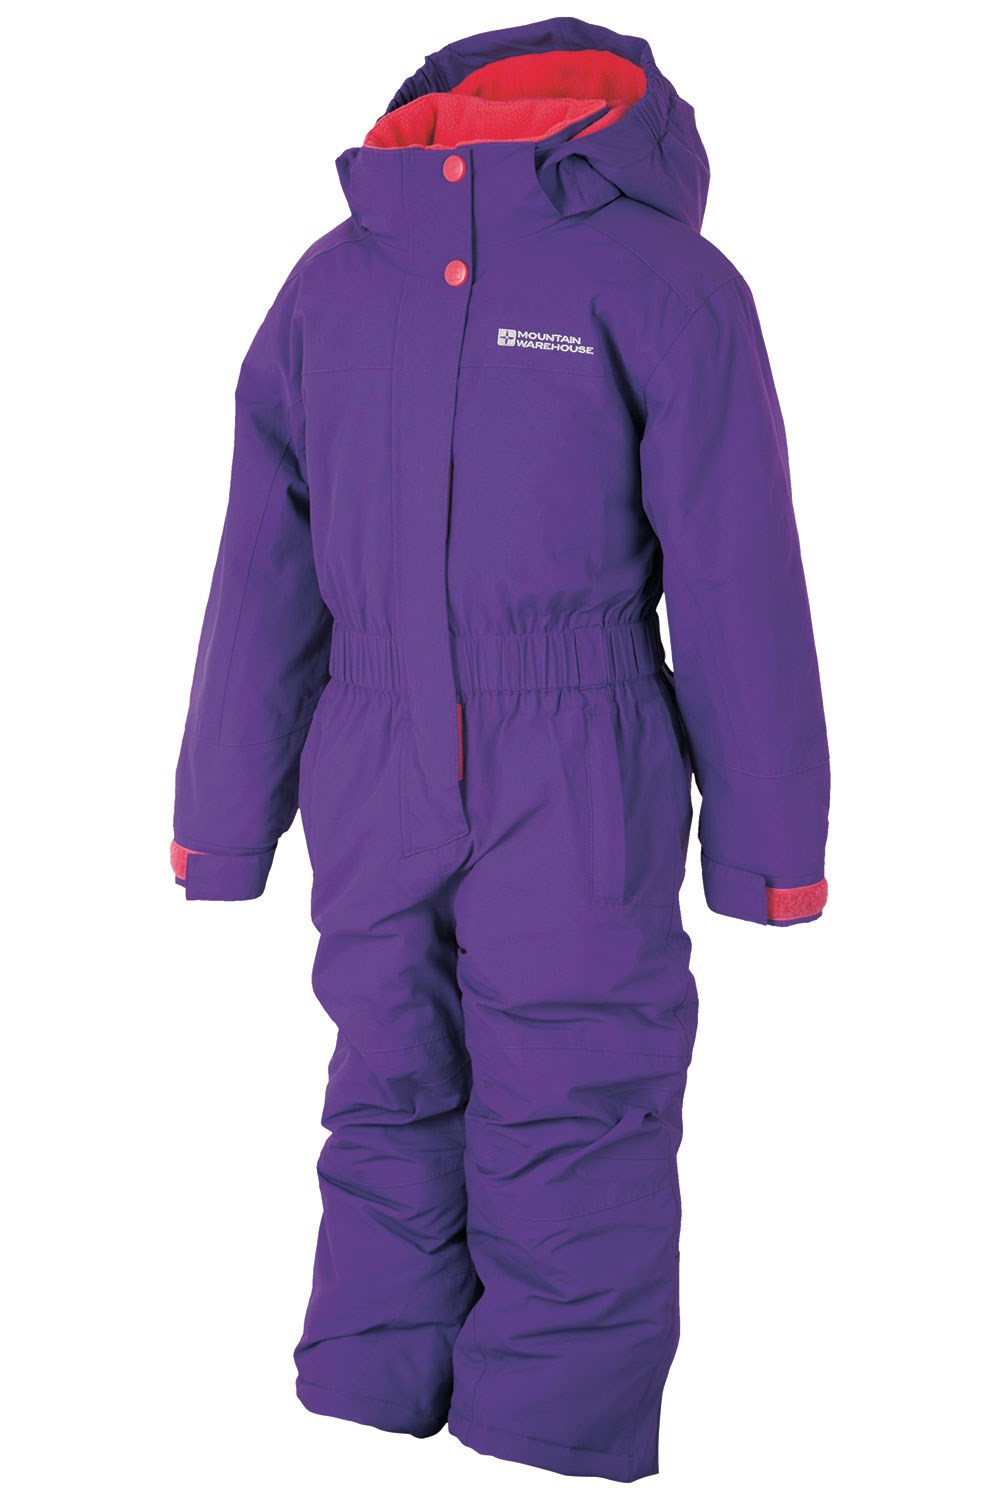 target infant snowsuit